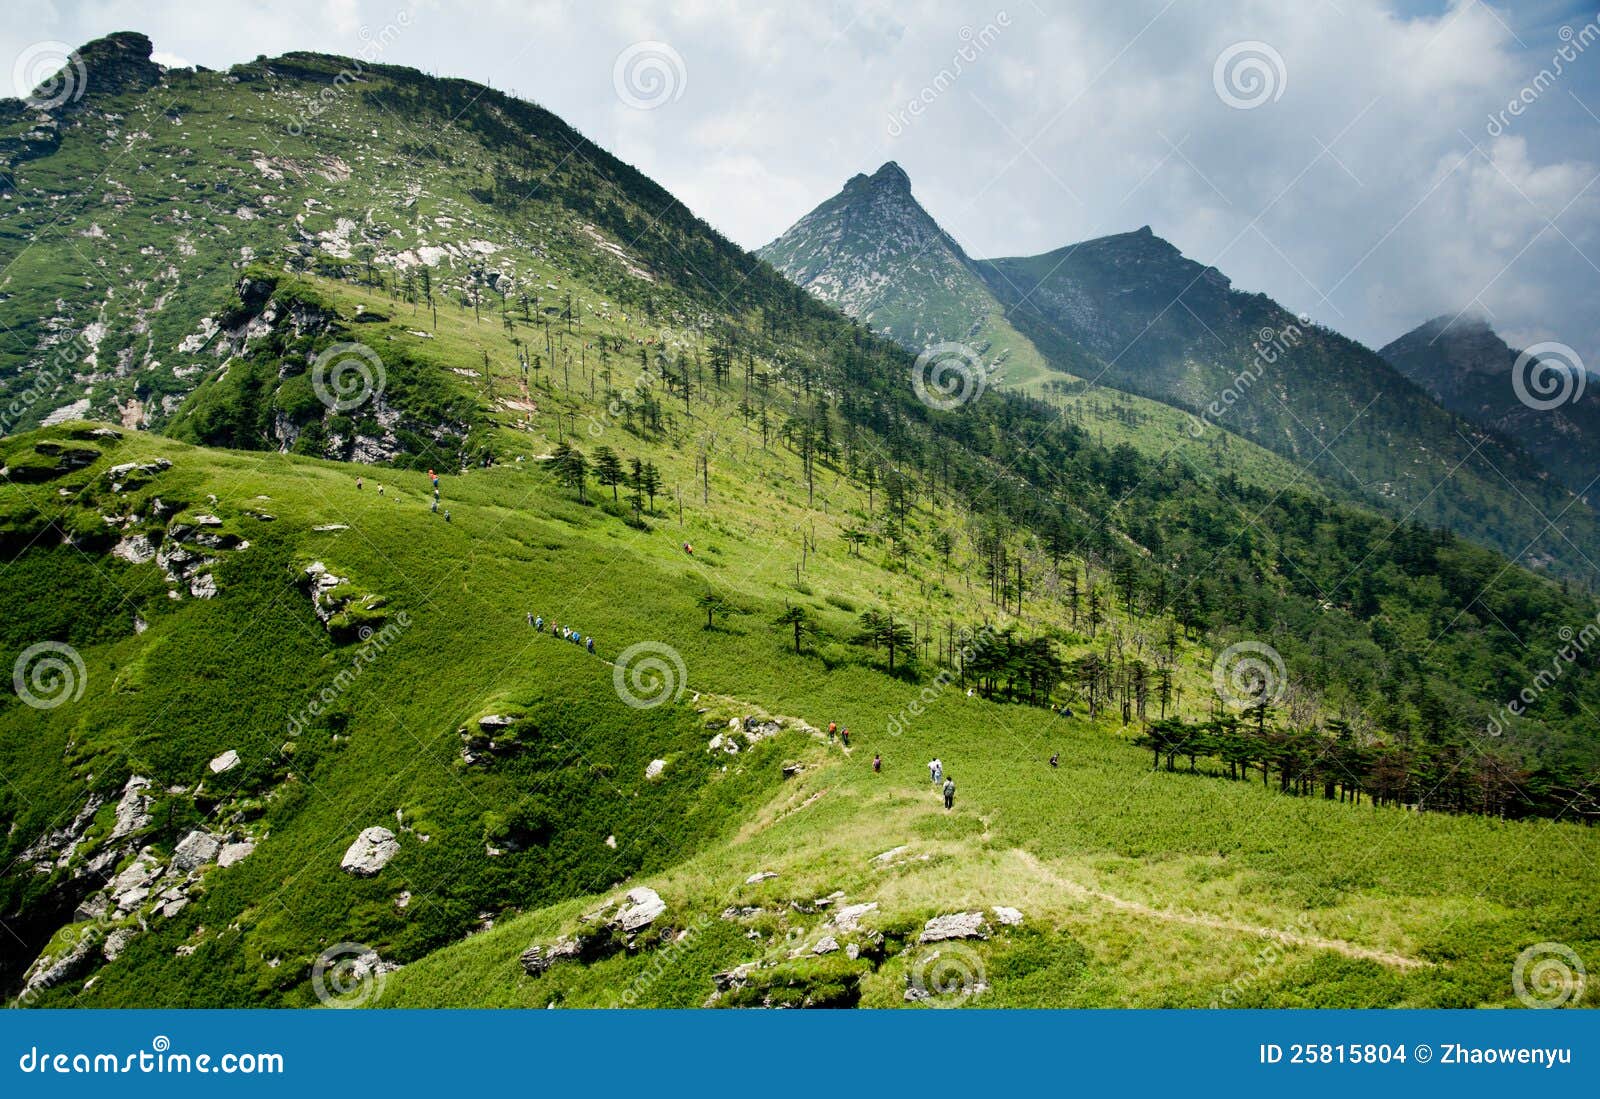 the buckhorn ridge of qinling mountain